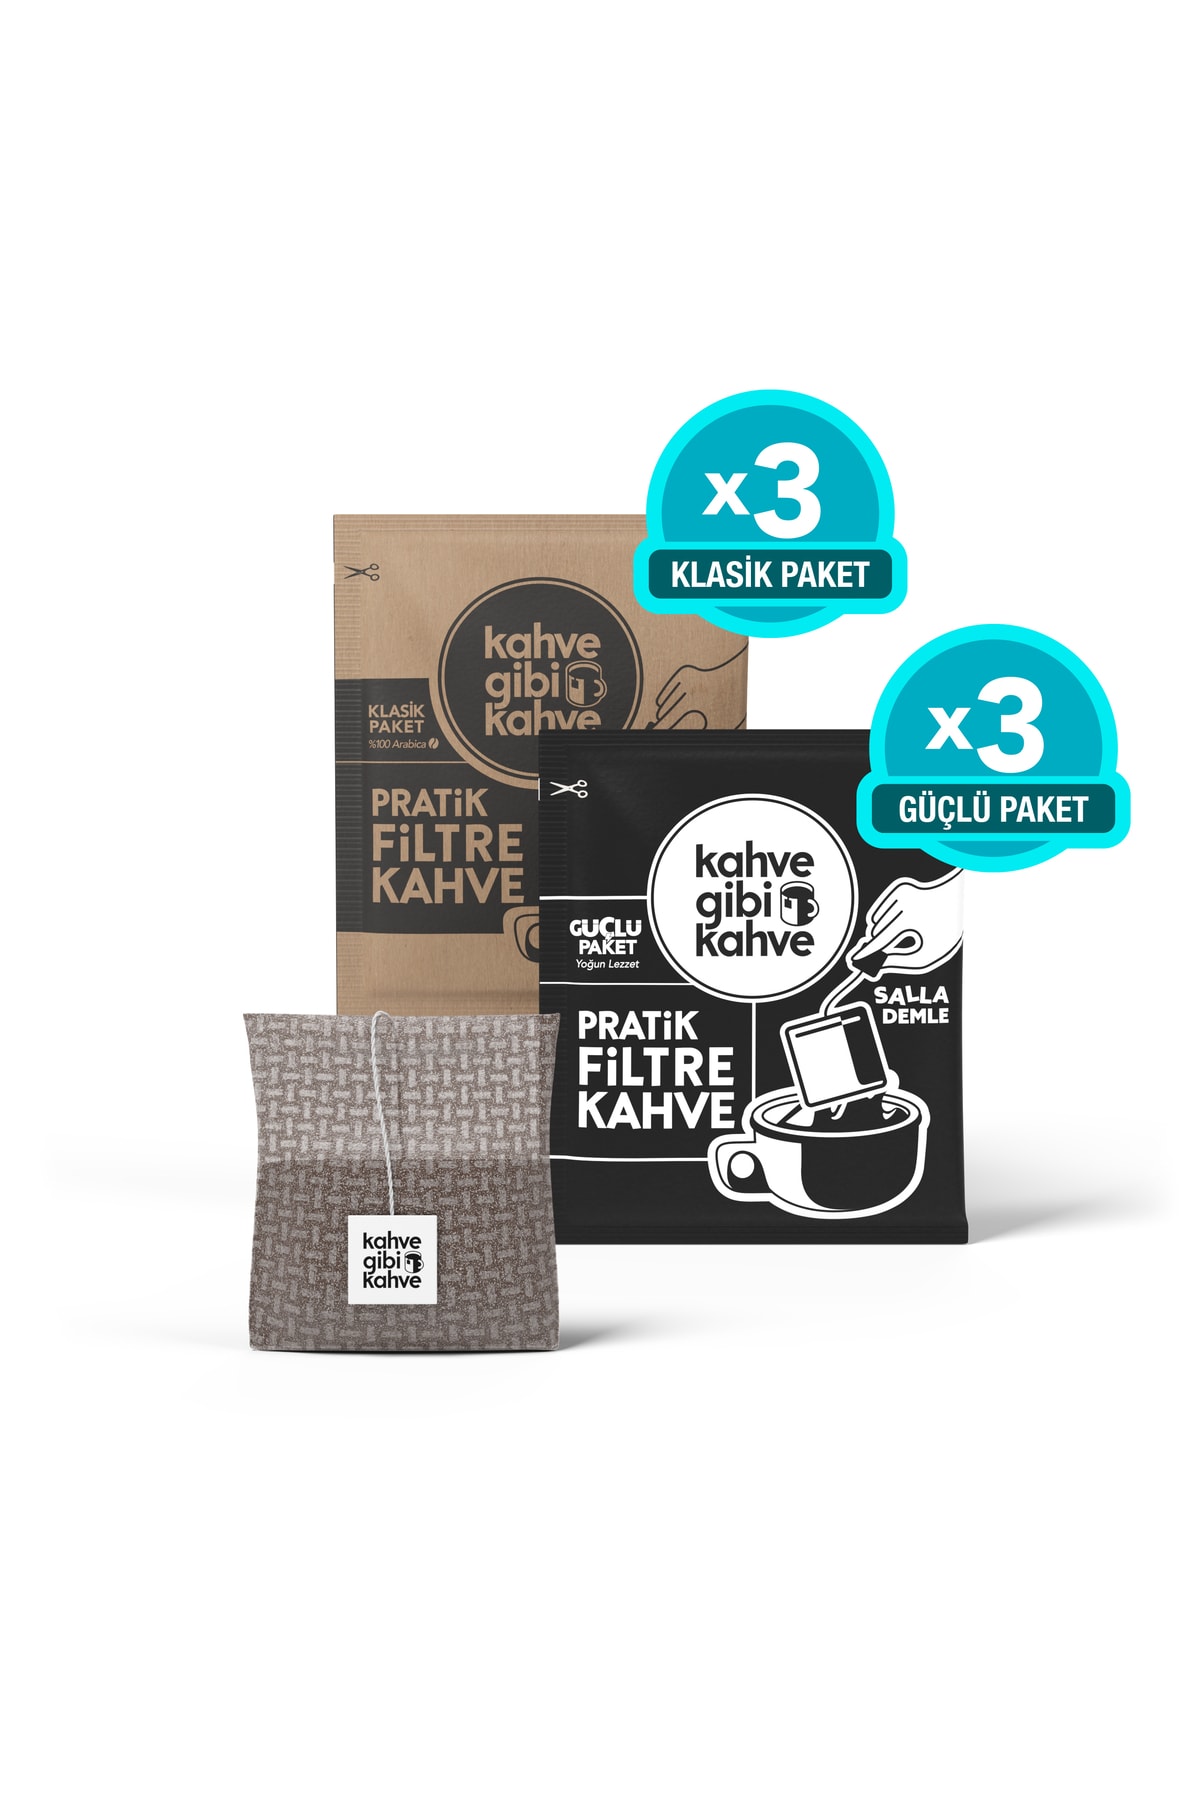 Kahvegibikahve Salla-demle Filtre Kahve Deneme Paketi- 6 Adet (3 X Klasik & 3 X Güçlü)